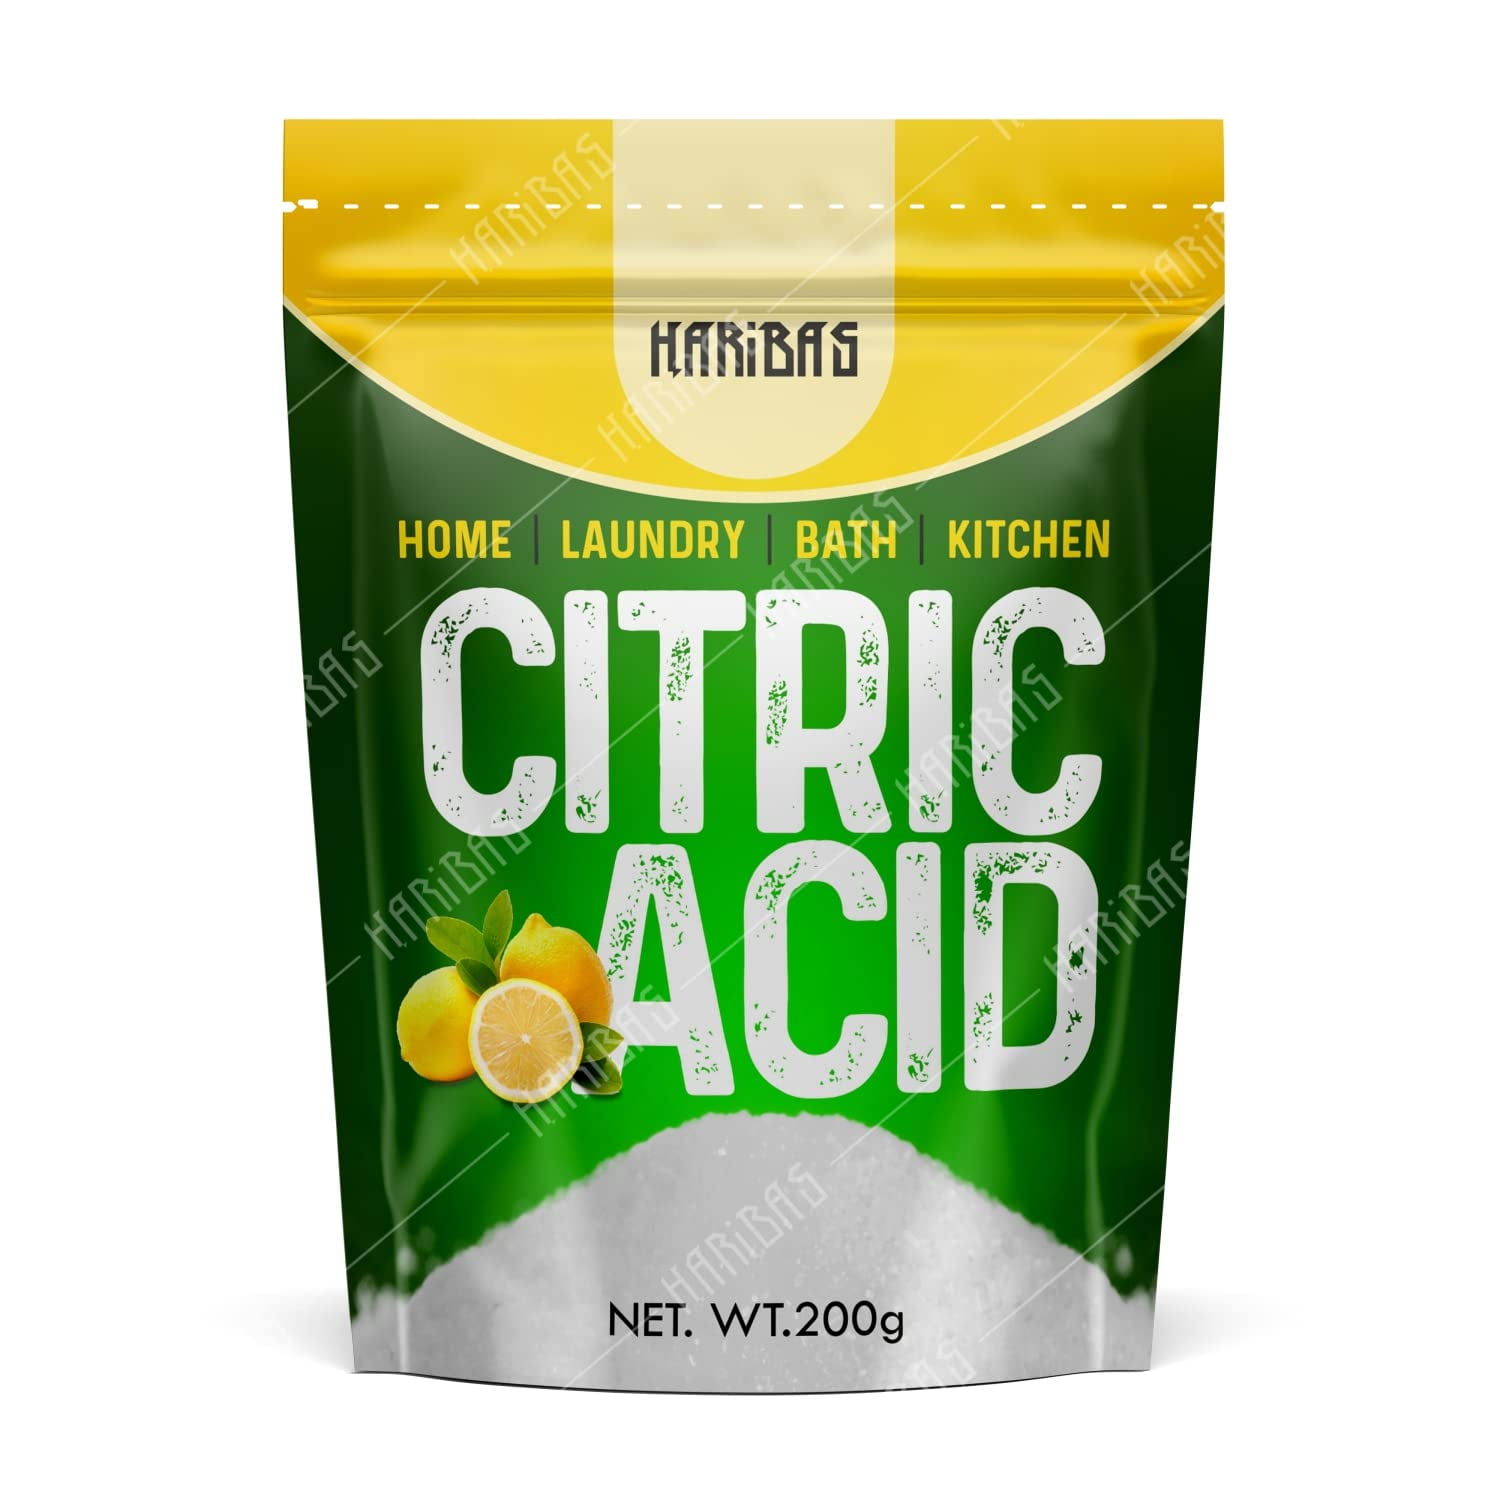 Milliard 100% Pure Food Grade Citric Acid - Non-GMO 1lb, Lemon Flavored 